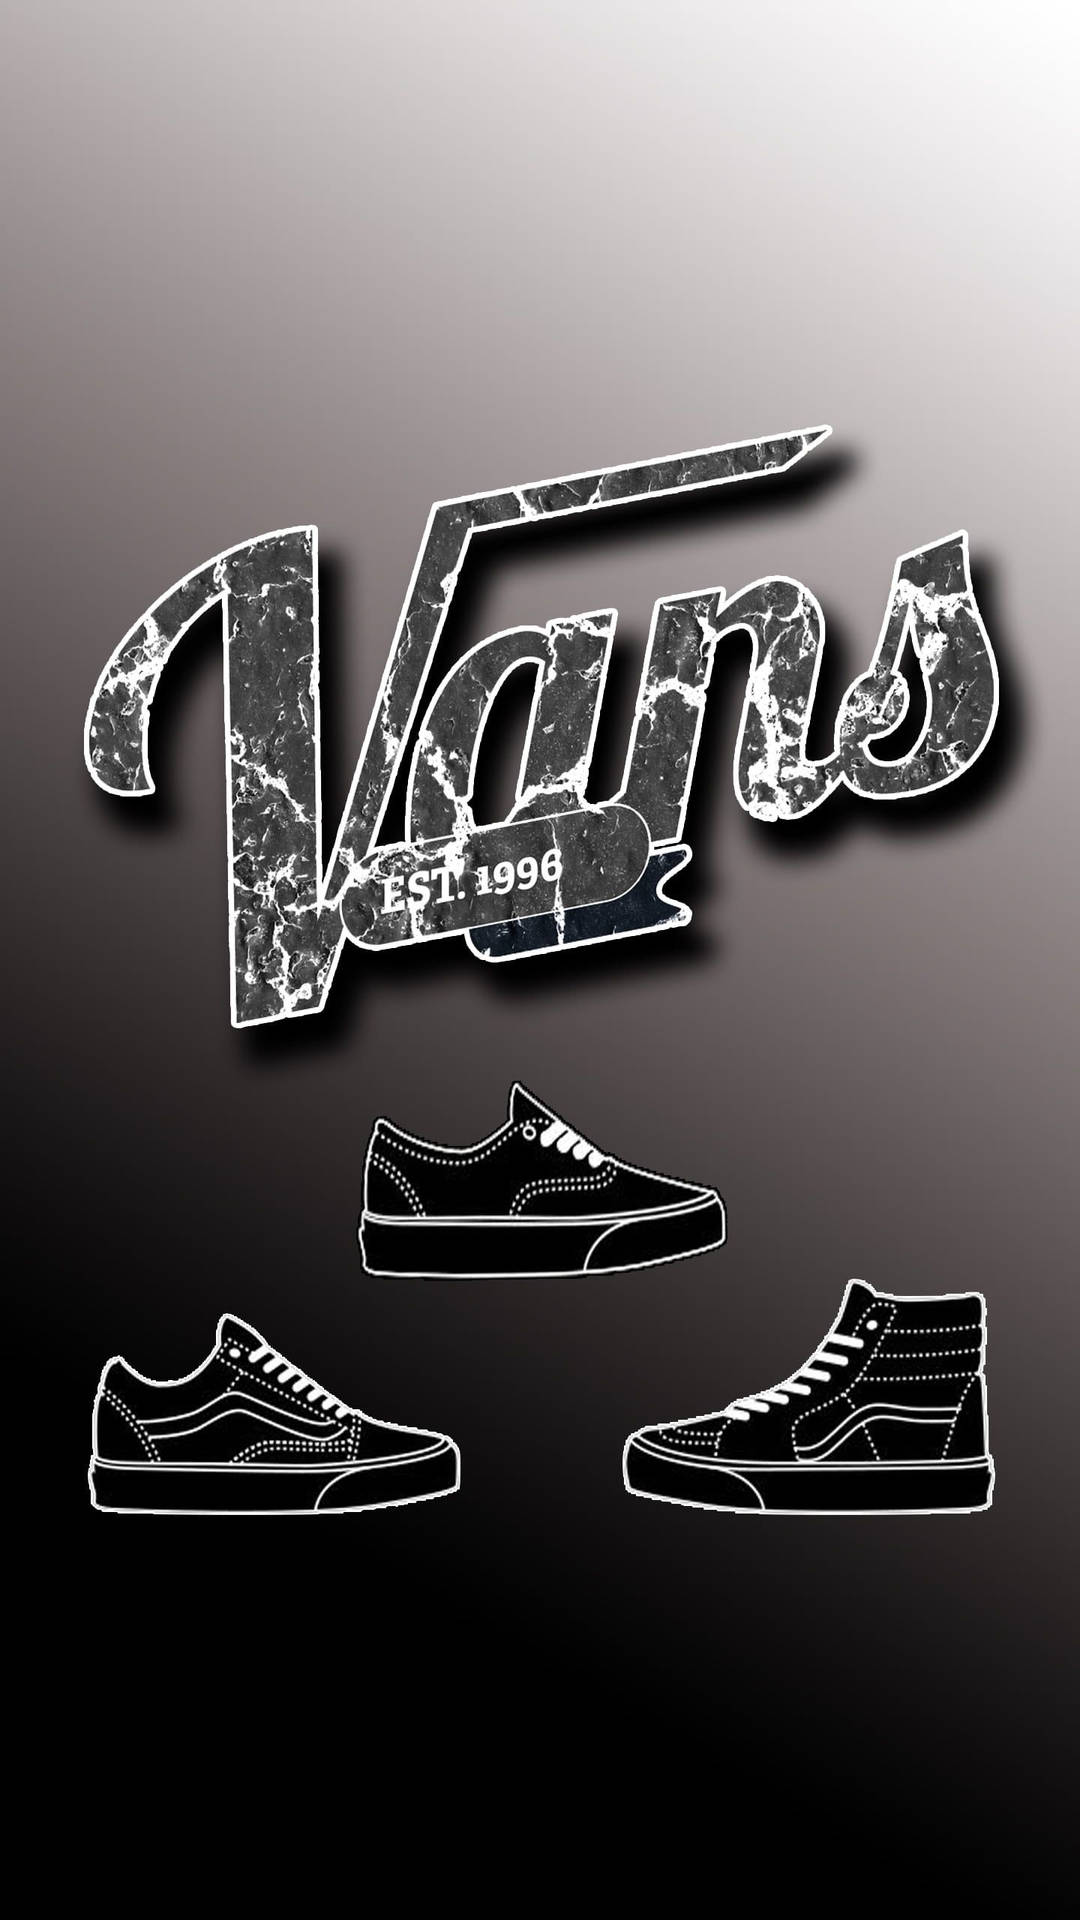 Kursivesschwarzweißes Vans-logo Wallpaper